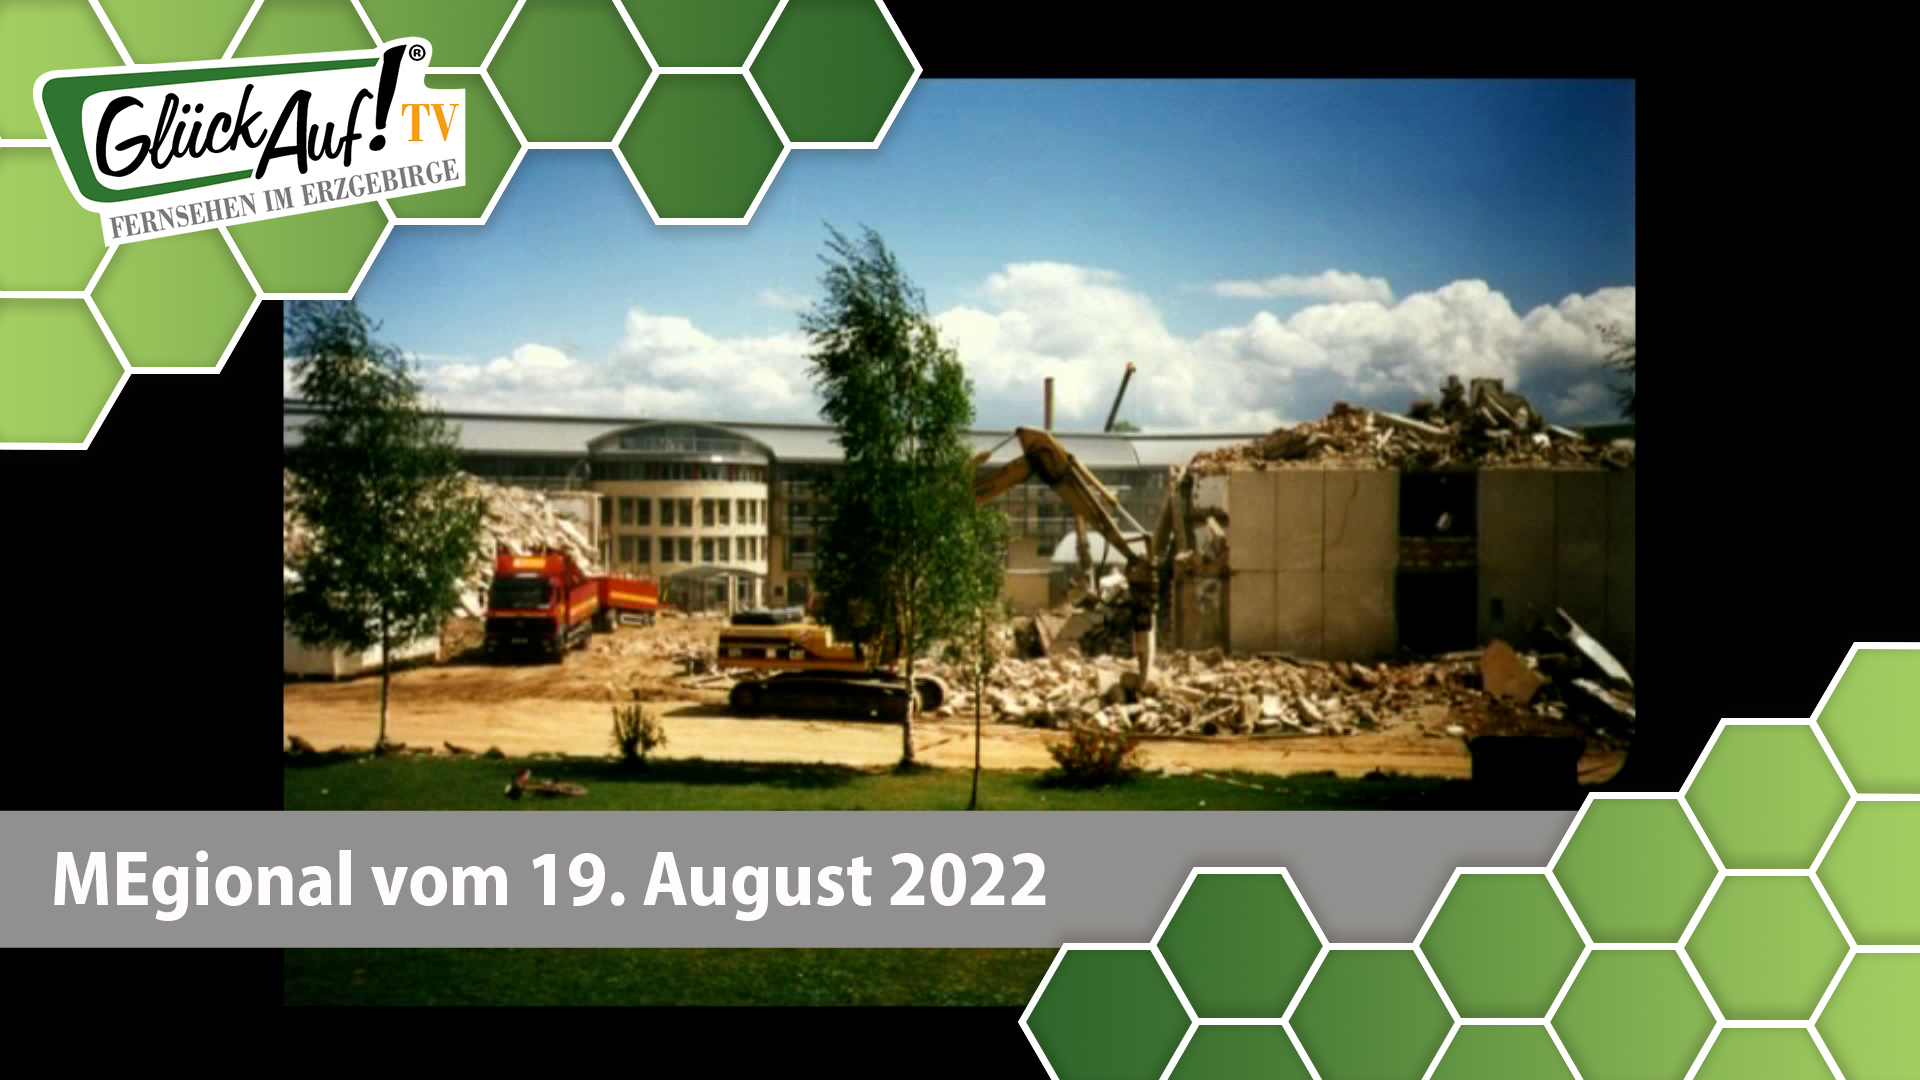 MEgional am 19. August 2022 - mit der Eröffnung der Knappschaftsklinik Warmbad vor 25 Jahren